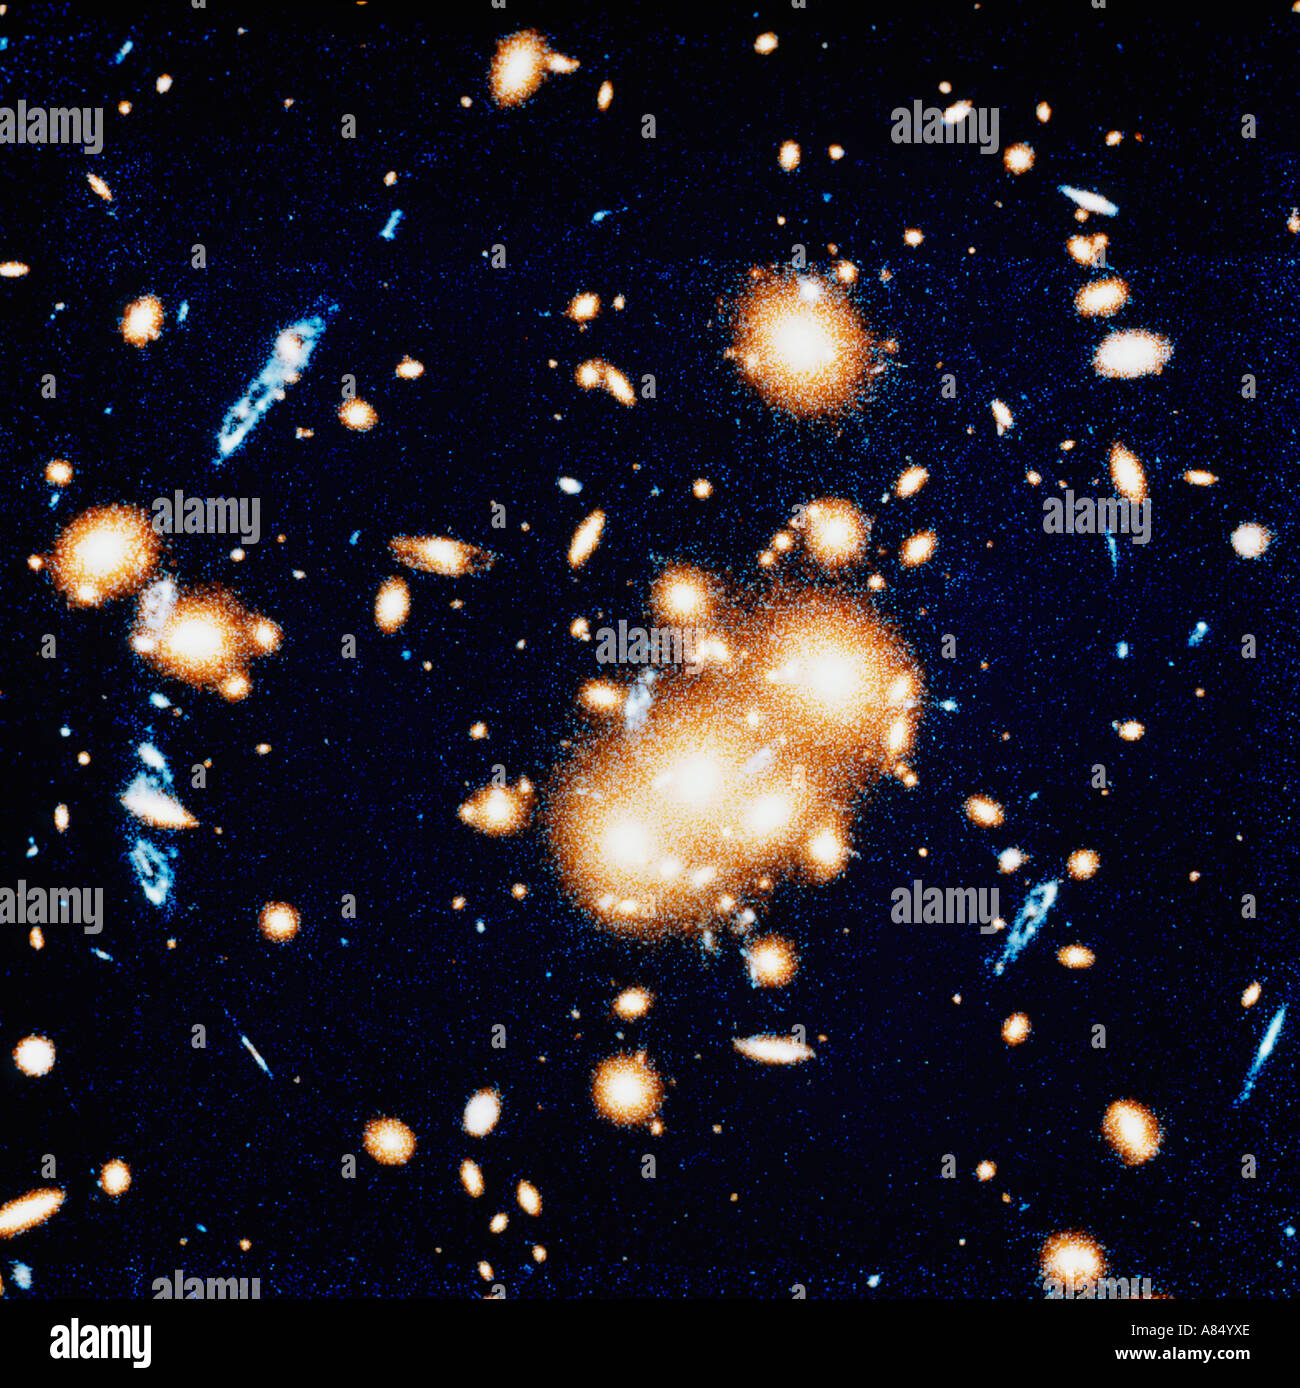 Spazio e astronomia. Immagine telescopica Hubble. Vista profonda dell'Universo che mostra le prime galassie formate. Foto Stock